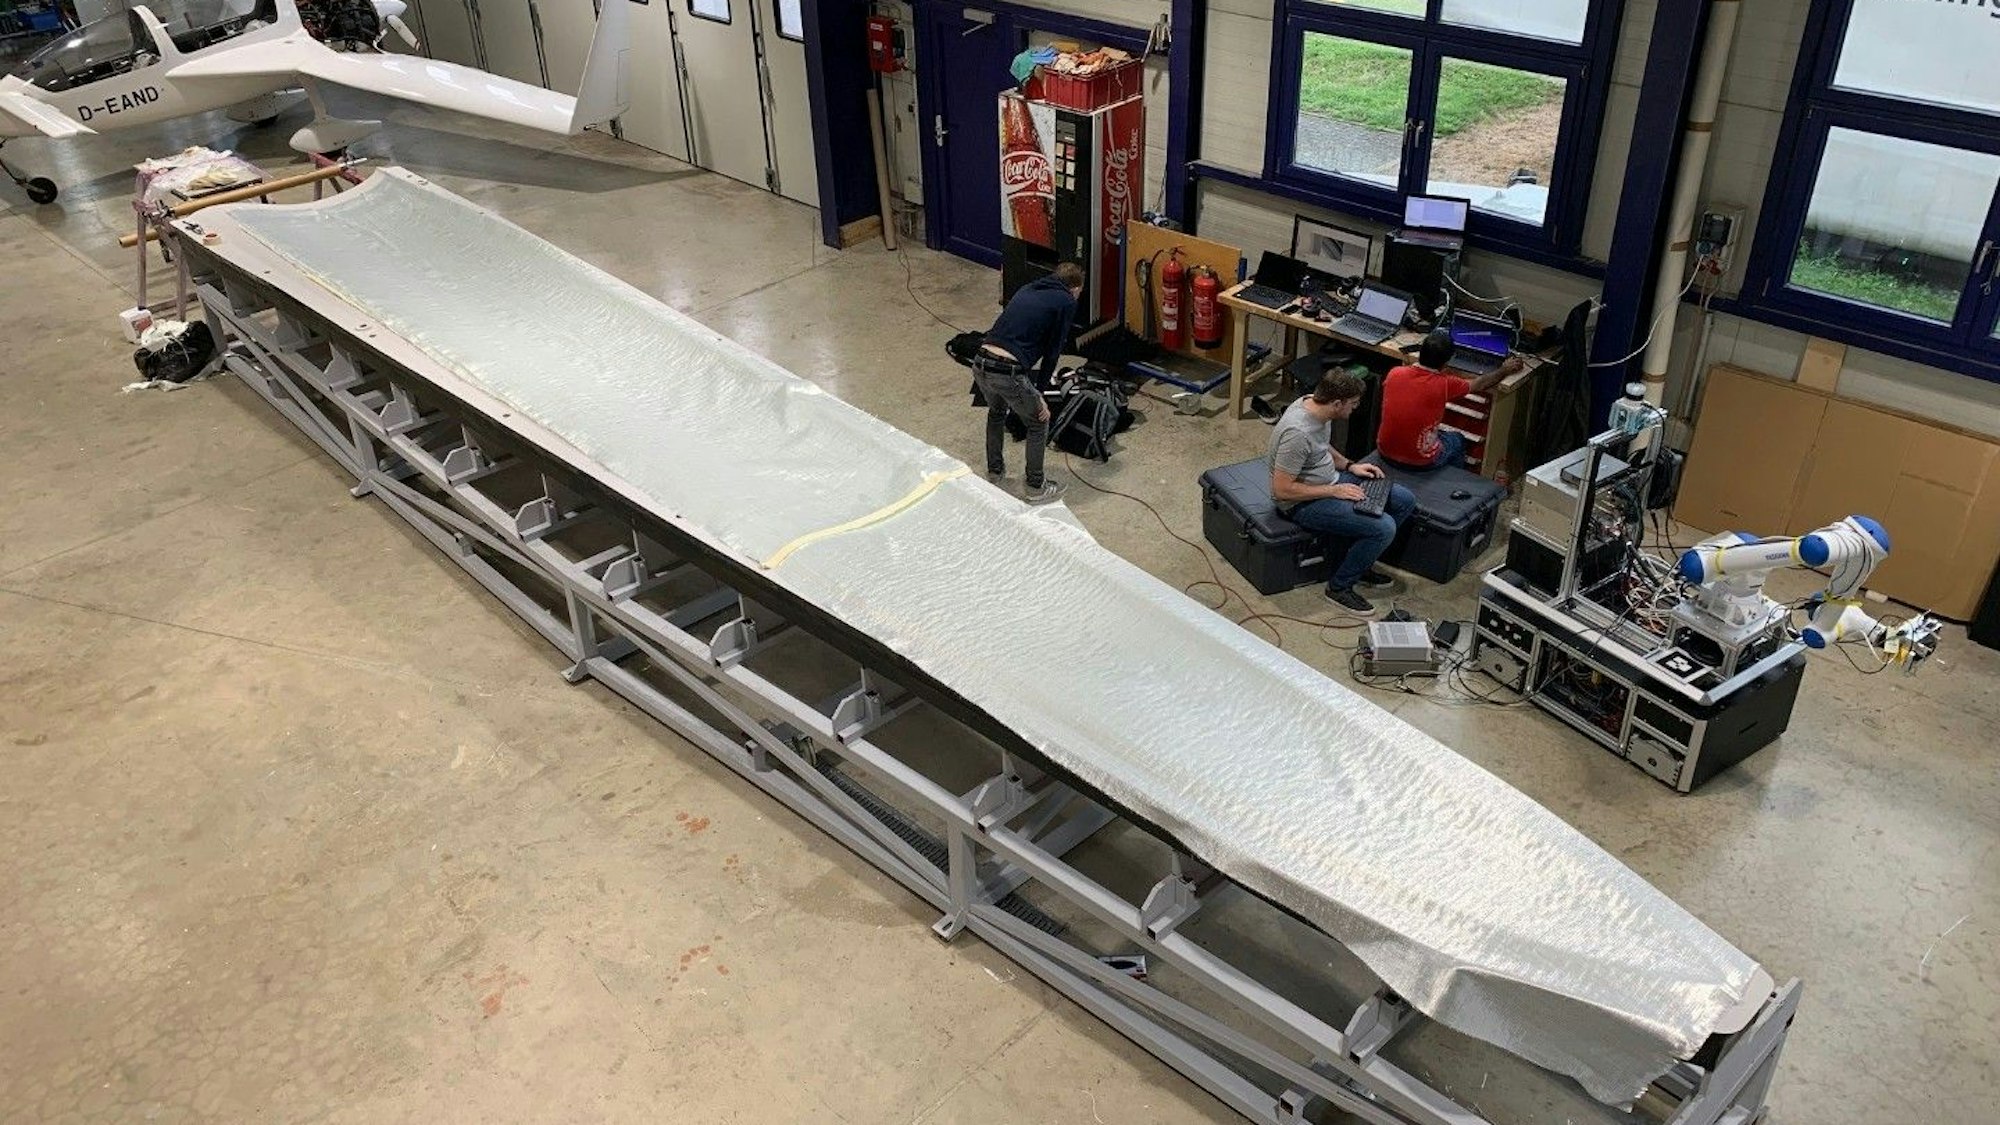 Bei der Aeroconcept GmbH ist für einen Test ein Faserpaket für eine Rotorblattspitze ausgelegt worden. Techniker sitzen neben der Form in einer Flugzeughalle.